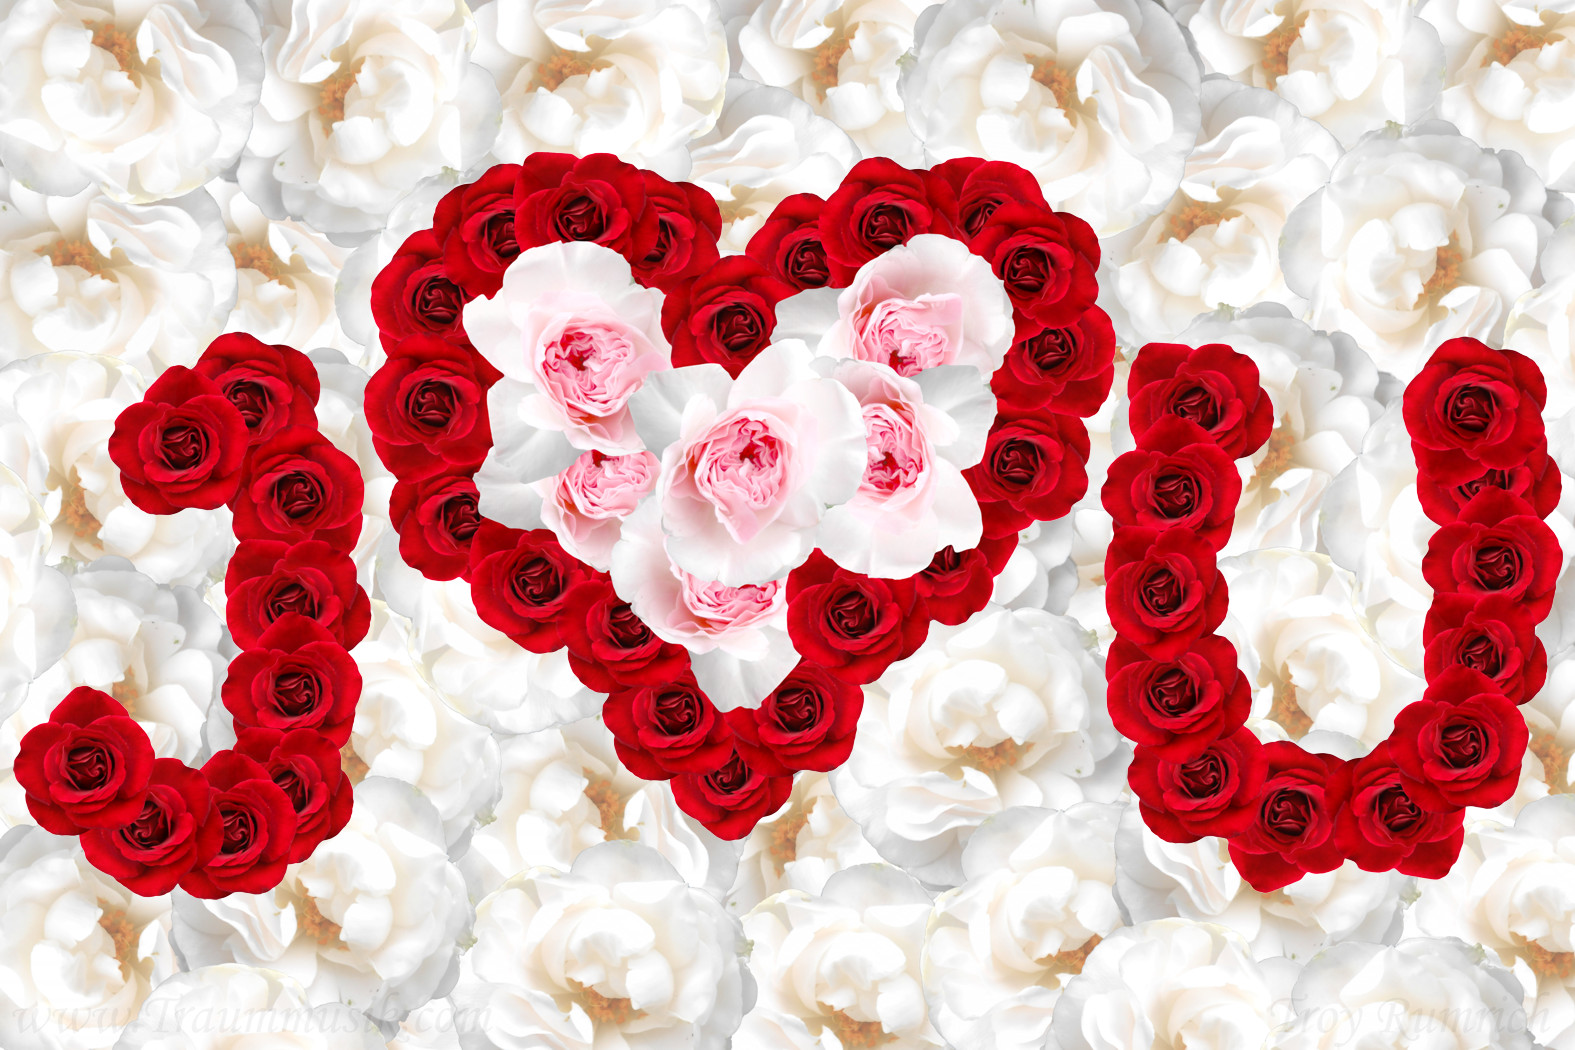 wallpaper "I Love You" Herz aus Rosen Blumen Bild Valentin